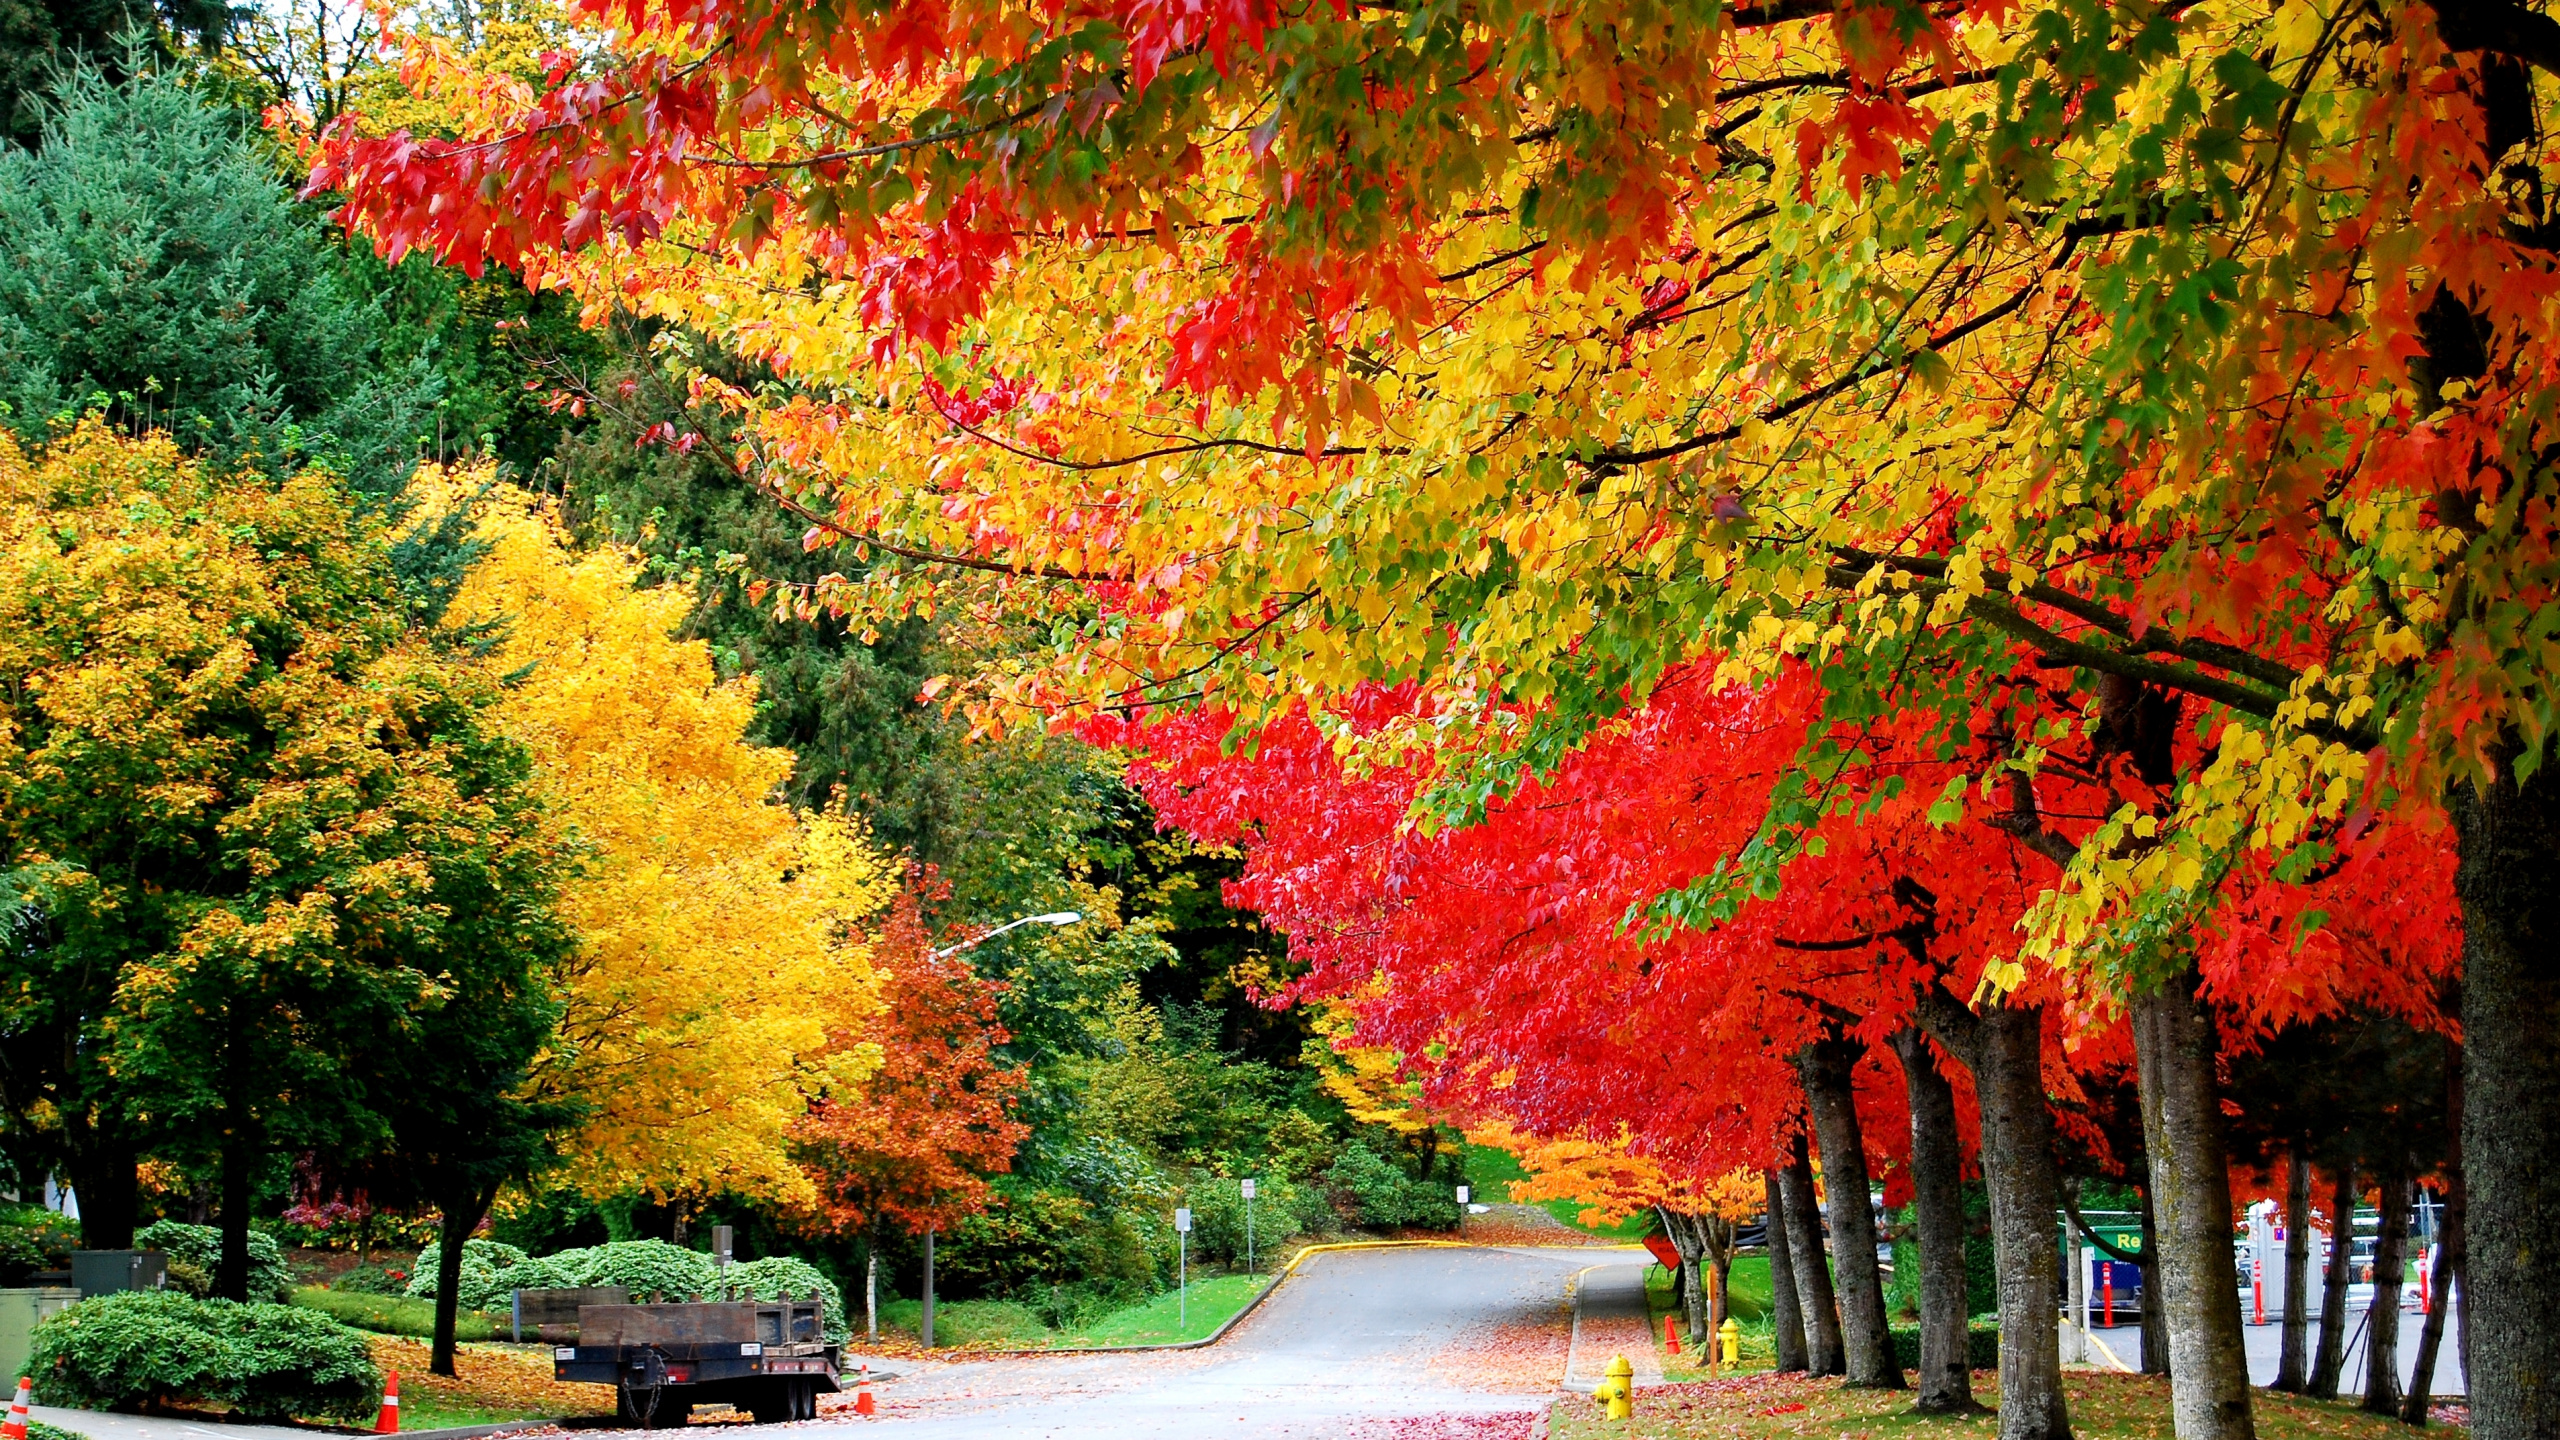 金秋季, 夏天, 性质, 红色的, 木本植物 壁纸 2560x1440 允许